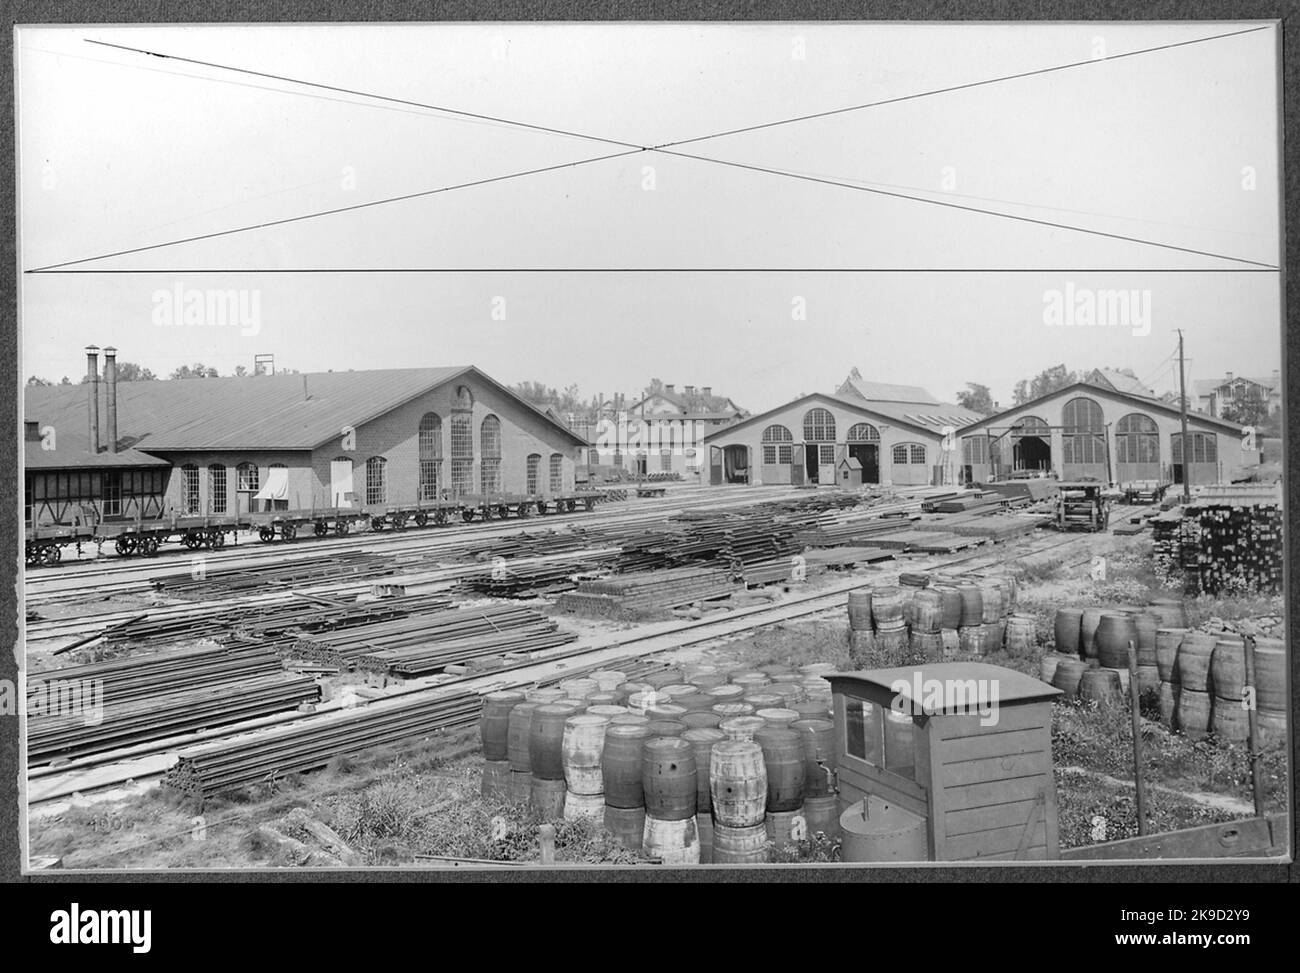 Von links nach rechts sind die Lokreparaturarbeiten mit der Schmiede und der Kupferwerkstatt, der Dampfwanne und dem Maschinenhaus, der Kutschenwerkstatt und der Interaktionswerkstatt zu sehen. Nach dem rechten Rand der Lokwerkstatt ist ein wenig vom Lagerdach zu sehen. Aufgenommen im August 1905 aus der Carbon-Box beim neuen Lokstallet. Stockfoto